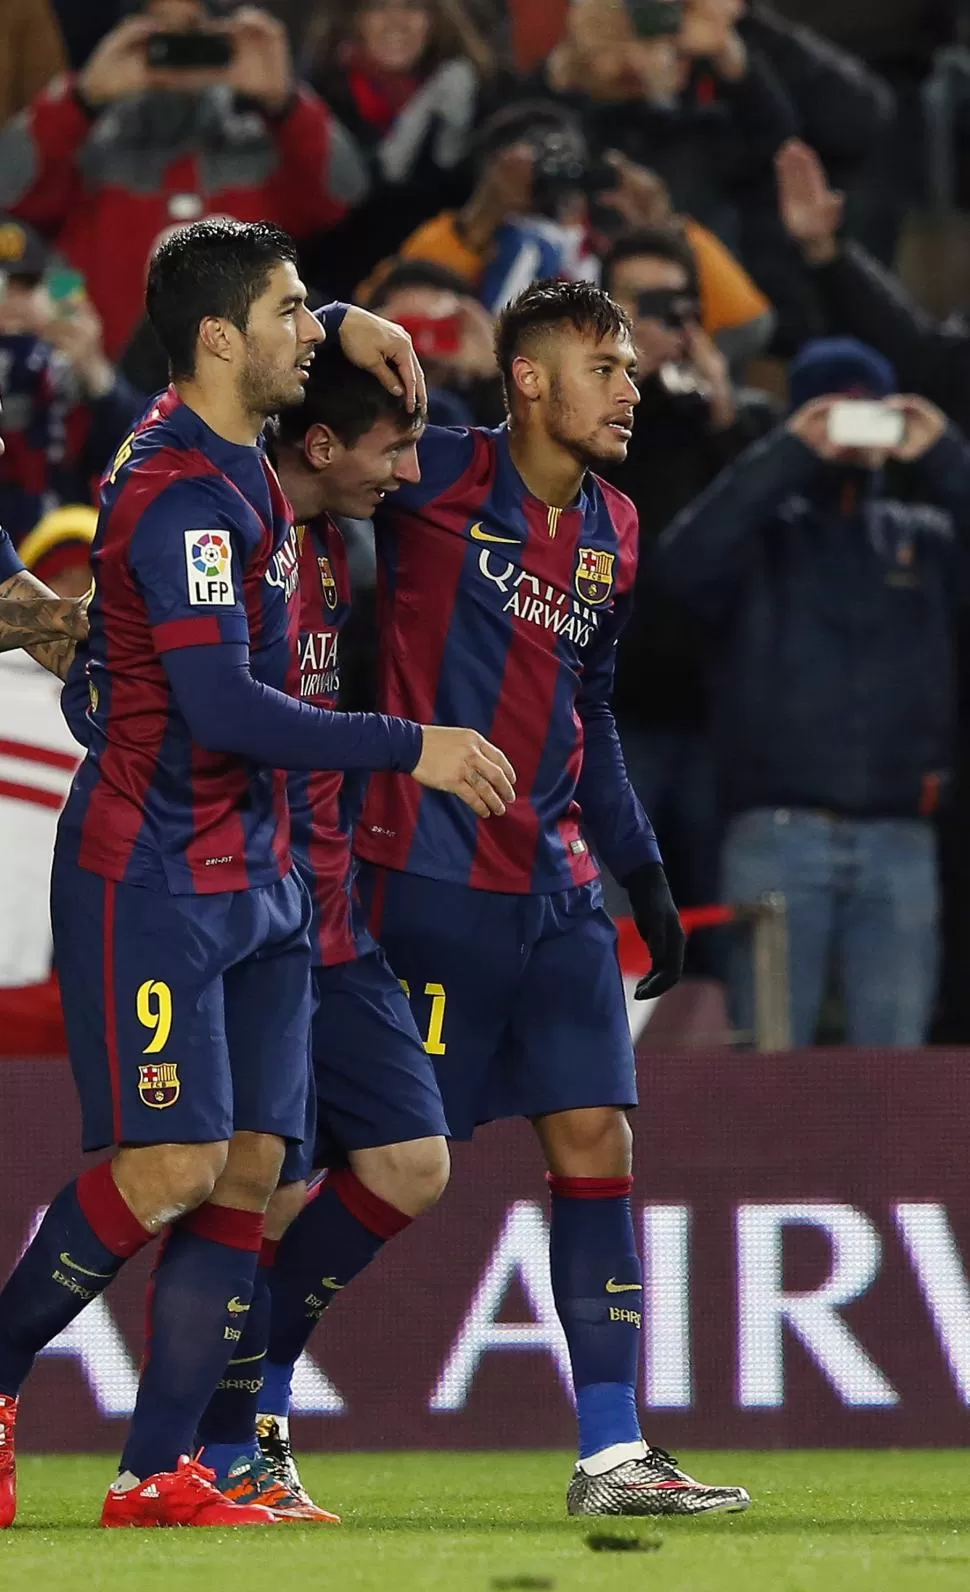 ATENDIERON SU JUEGO. Suárez y Neymar abrazan a Messi. Los tres cumplieron sus tareas, pese a la resistencia de Villareal. reuters